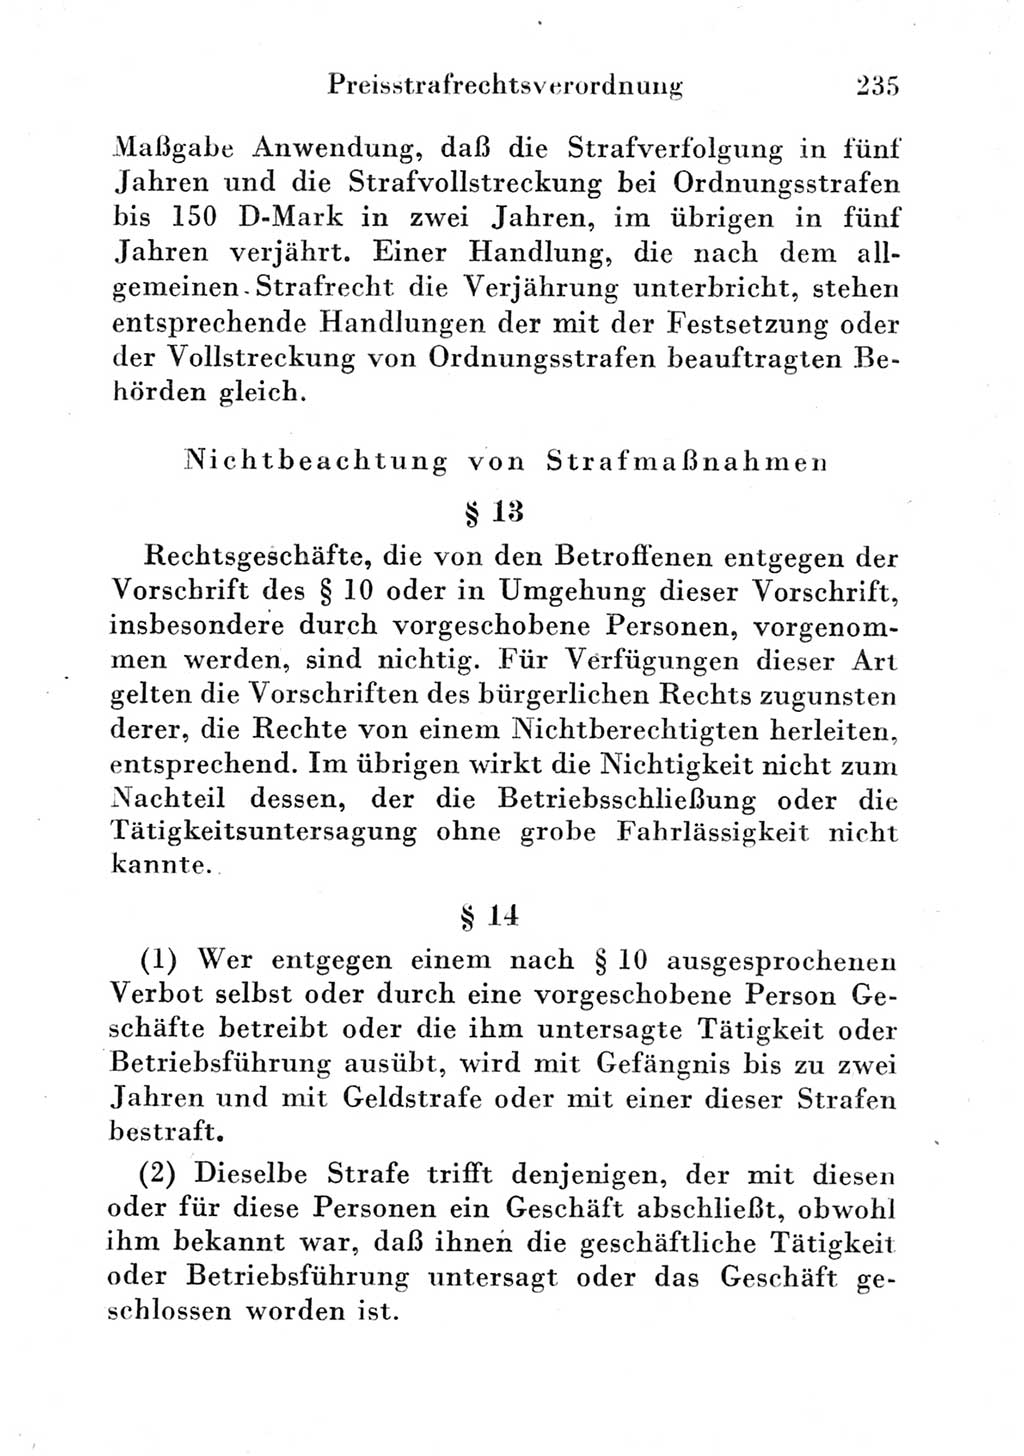 Strafgesetzbuch (StGB) und andere Strafgesetze [Deutsche Demokratische Republik (DDR)] 1951, Seite 235 (StGB Strafges. DDR 1951, S. 235)